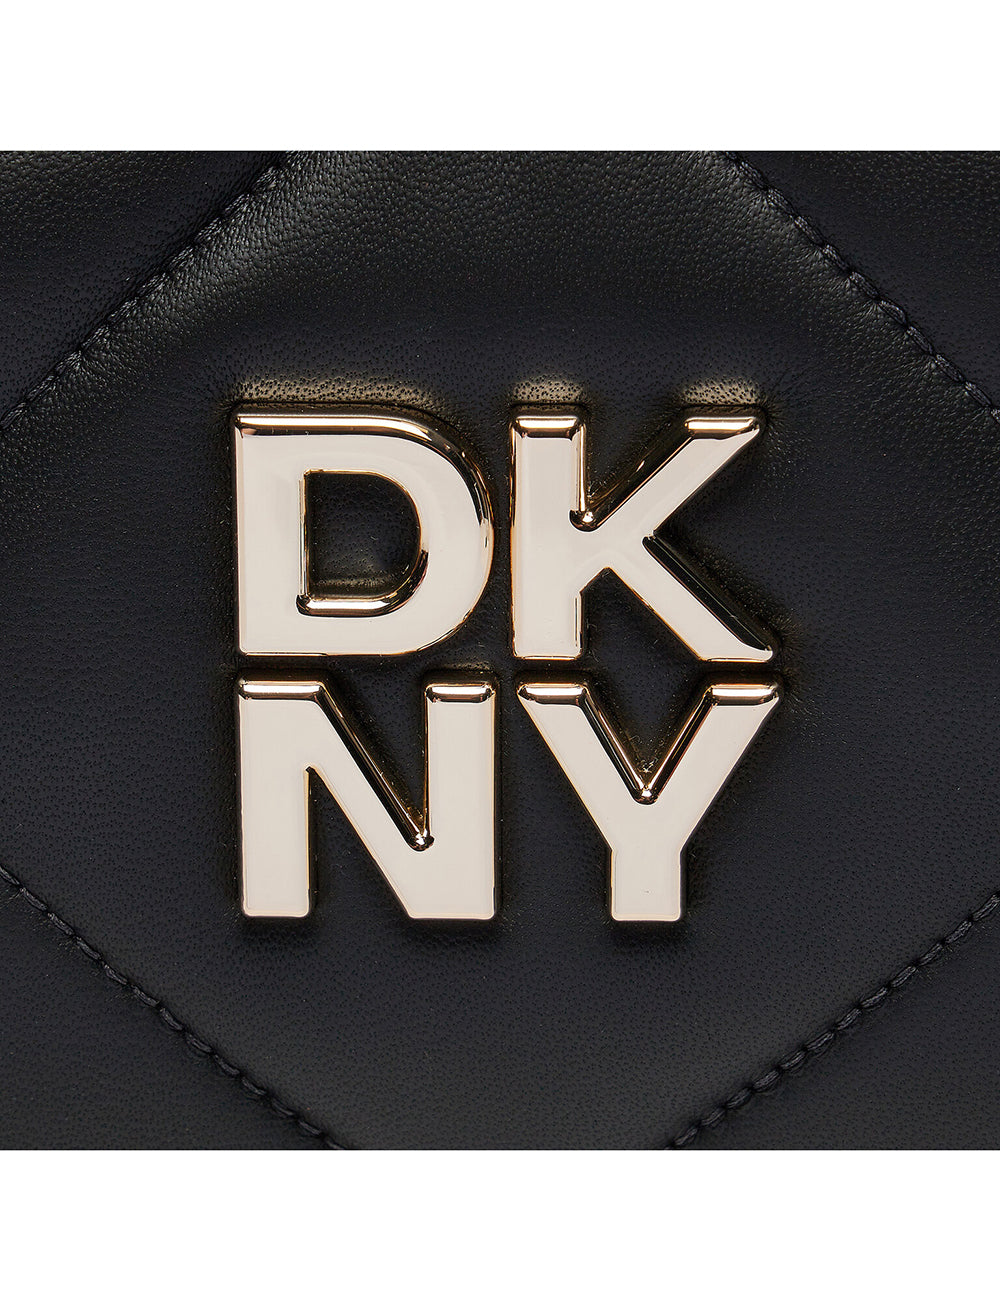 DKNY DKNY RED HOOK CAMERA CASE